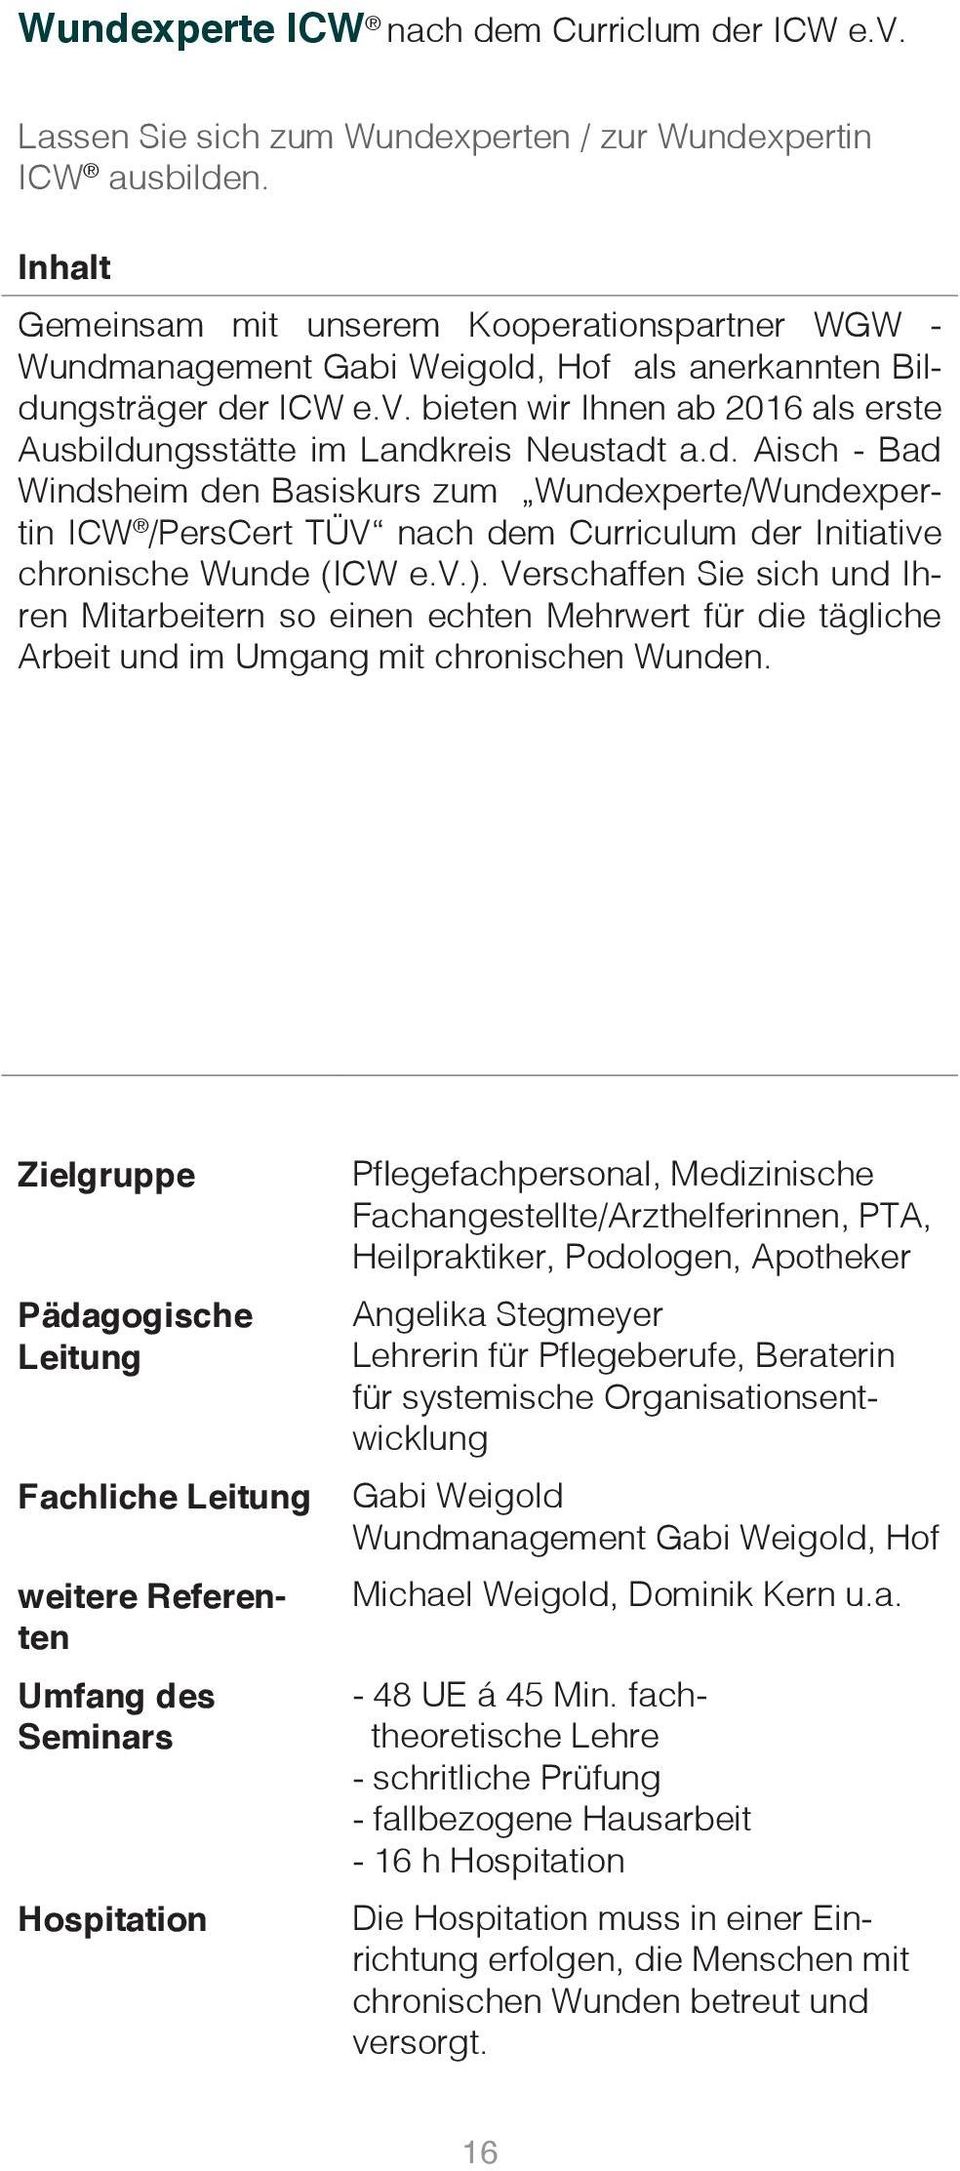 bieten wir Ihnen ab 2016 als erste Ausbildungsstätte im Landkreis Neustadt a.d. Aisch - Bad Windsheim den Basiskurs zum Wundexperte/Wundexpertin ICW /PersCert TÜV nach dem Curriculum der Initiative chronische Wunde (ICW e.